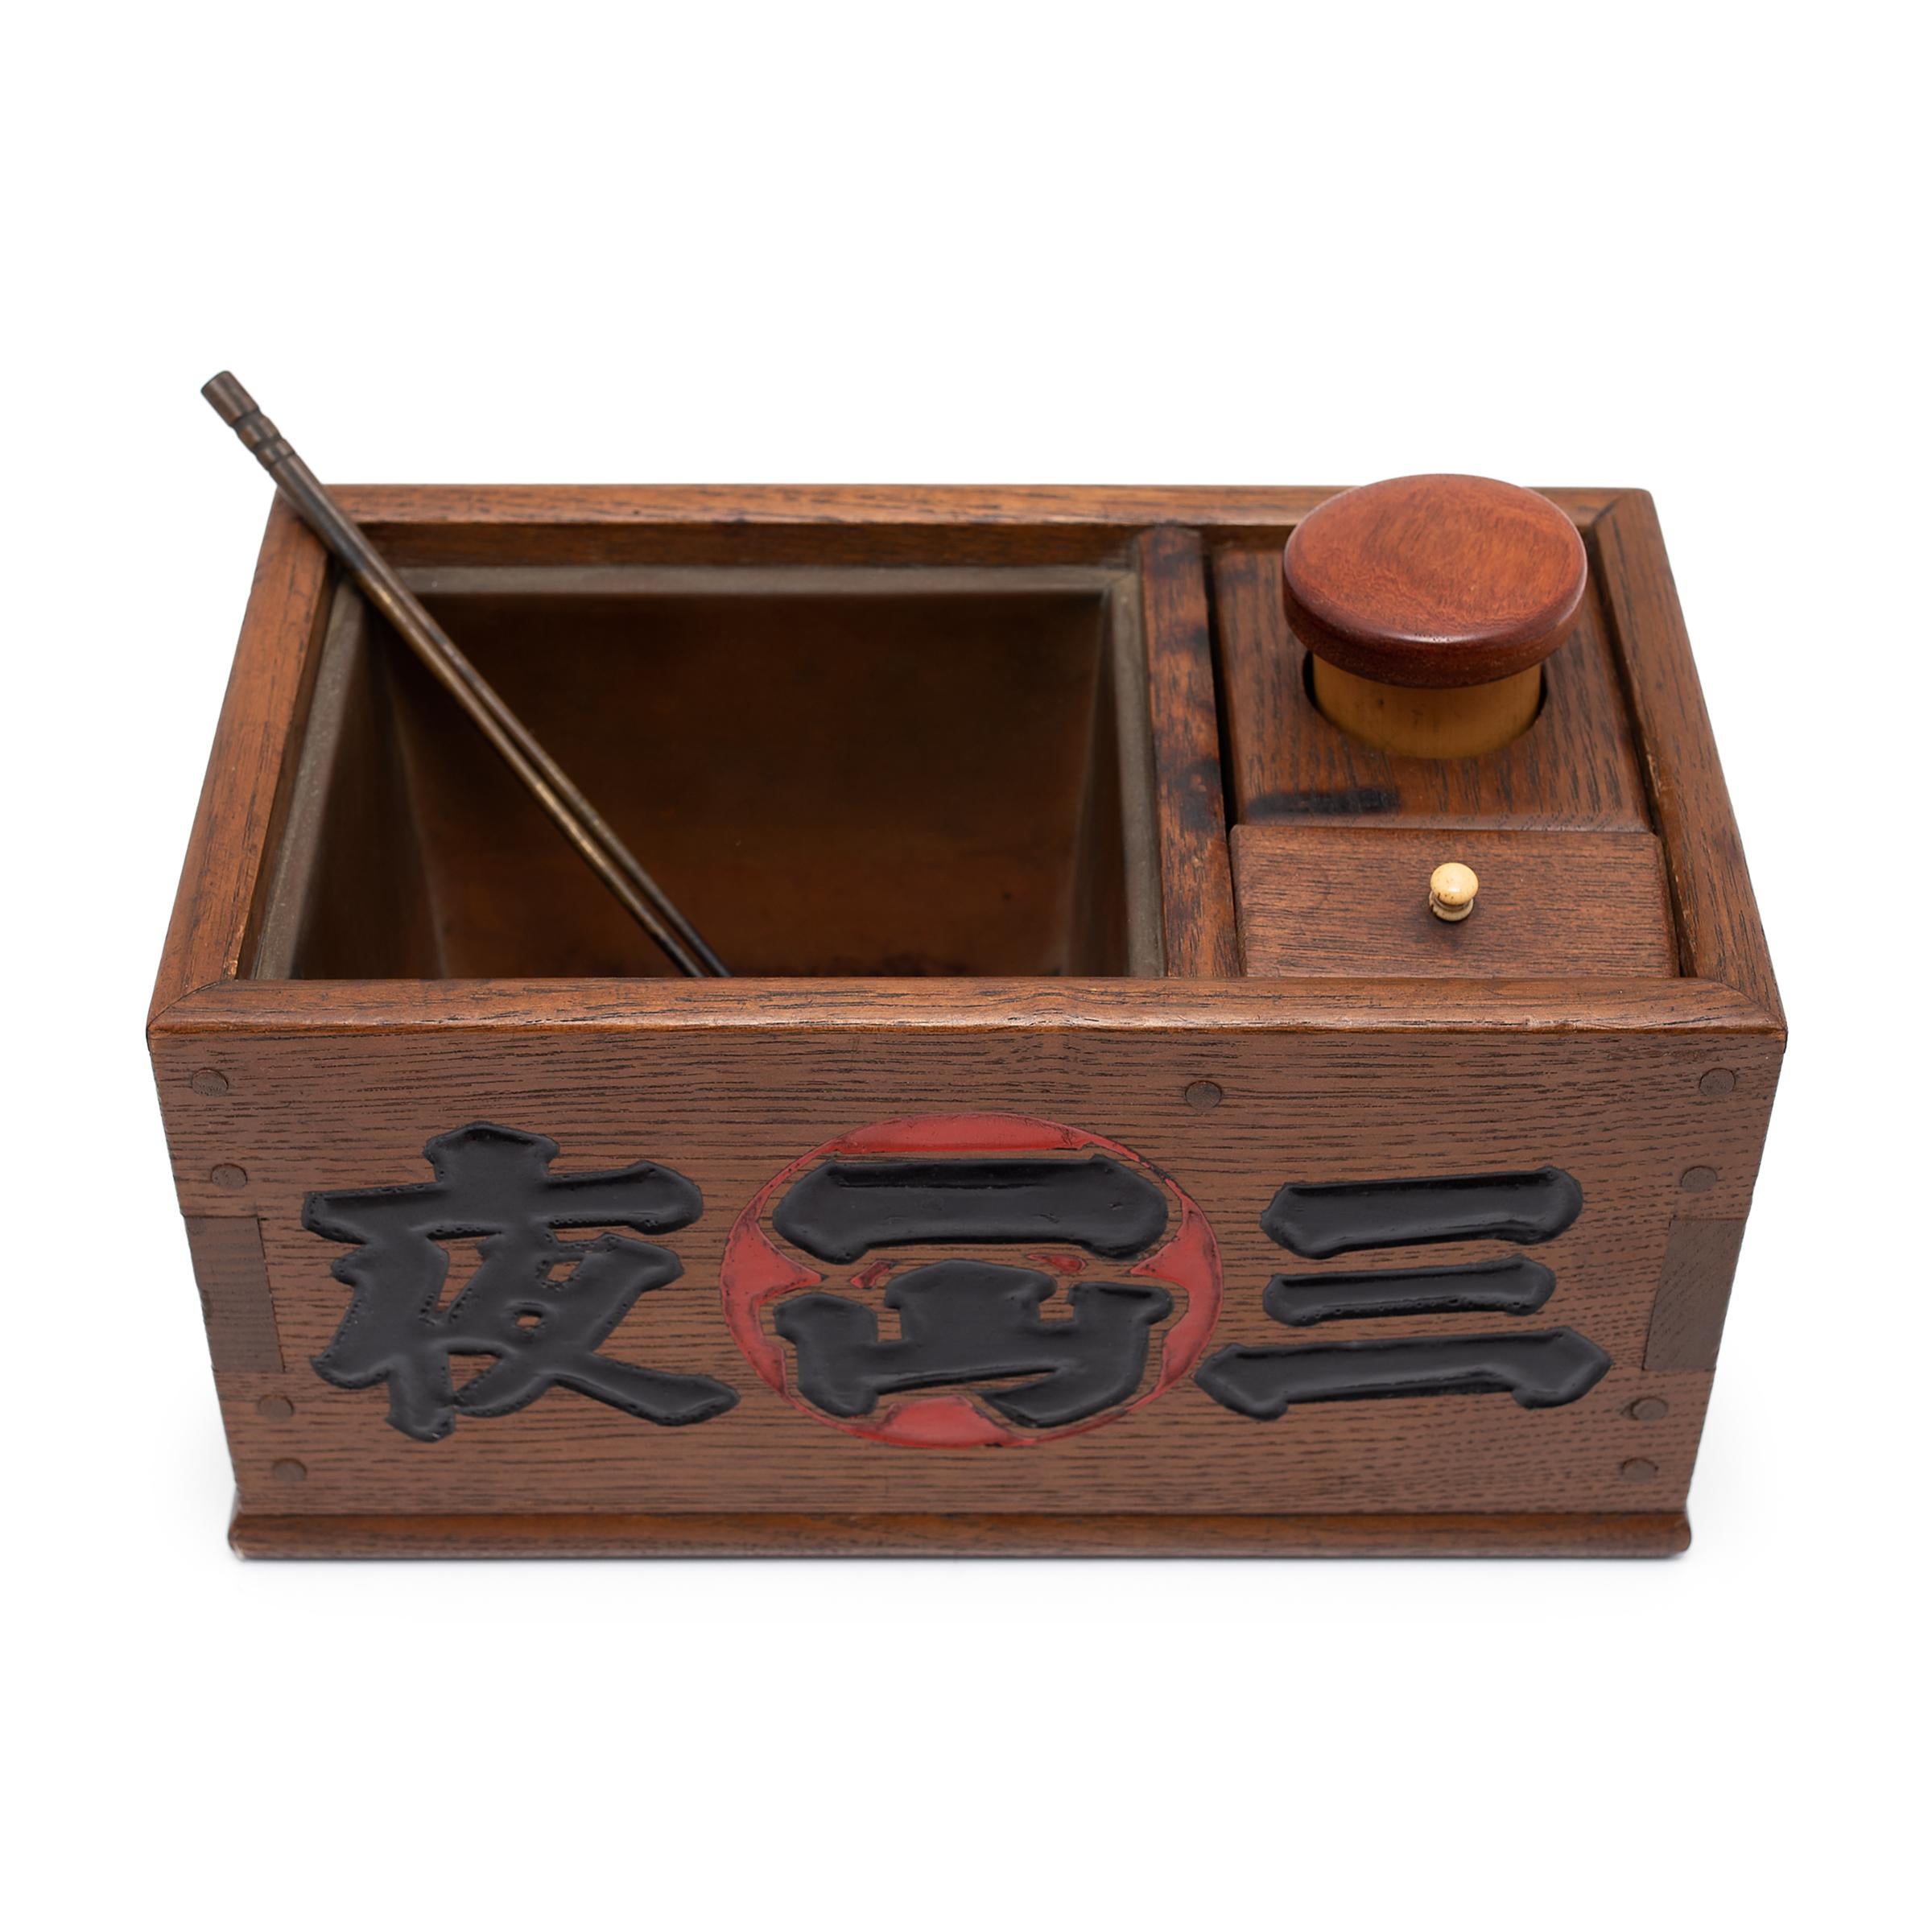 Cette boîte en bois est un tabako-bon japonais, ou 